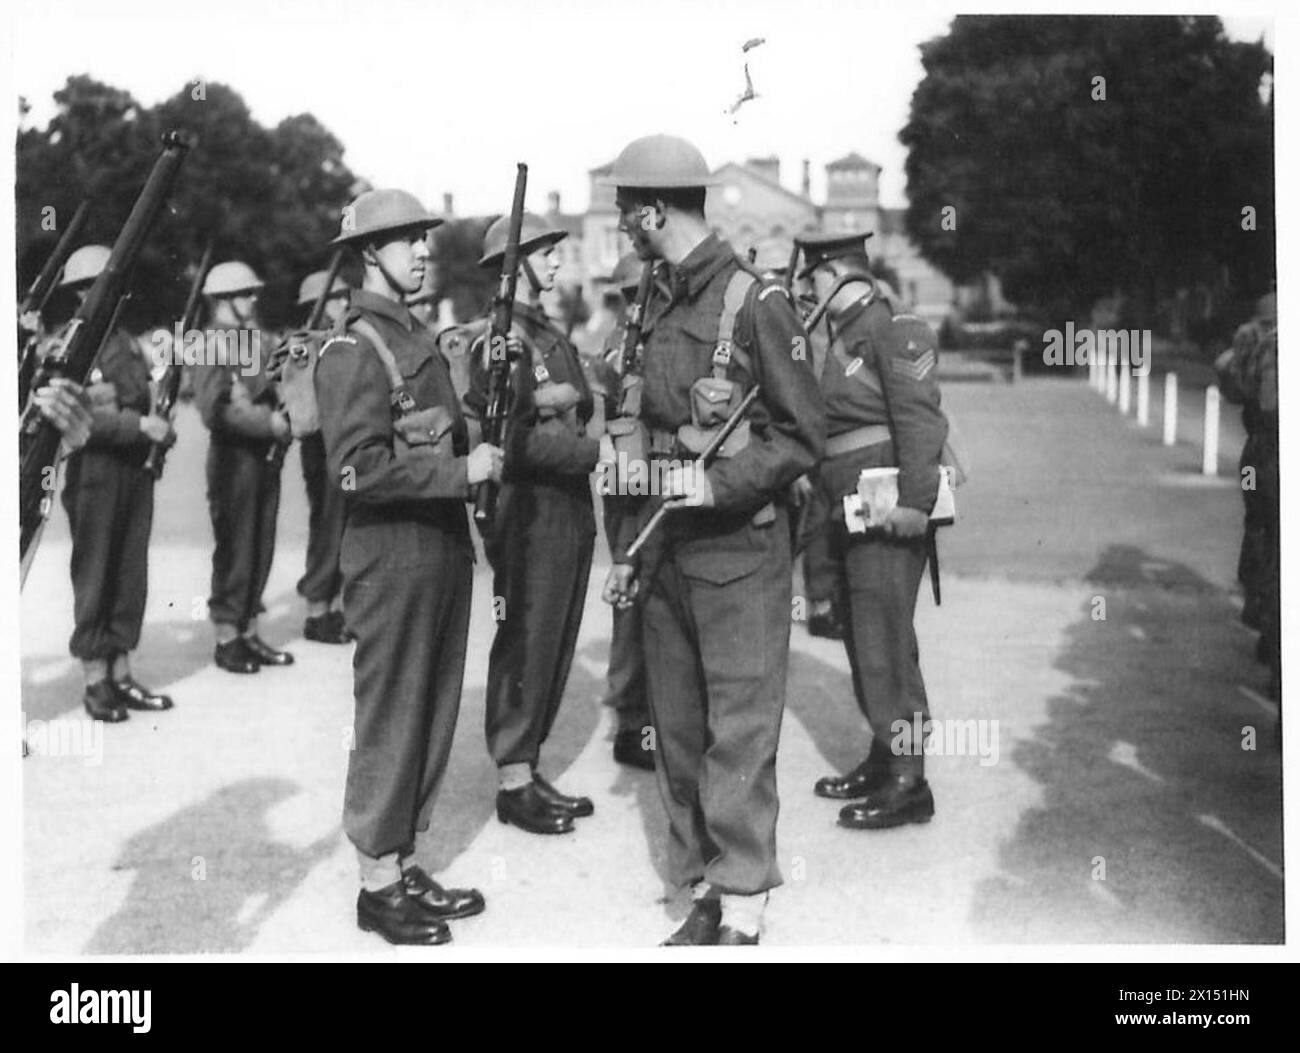 IL CASTELLO DI WINDSOR - ispezione dei fucili a Victoria Road, Windsor. Reclute del battaglione di addestramento Grenadier Guards British Army Foto Stock